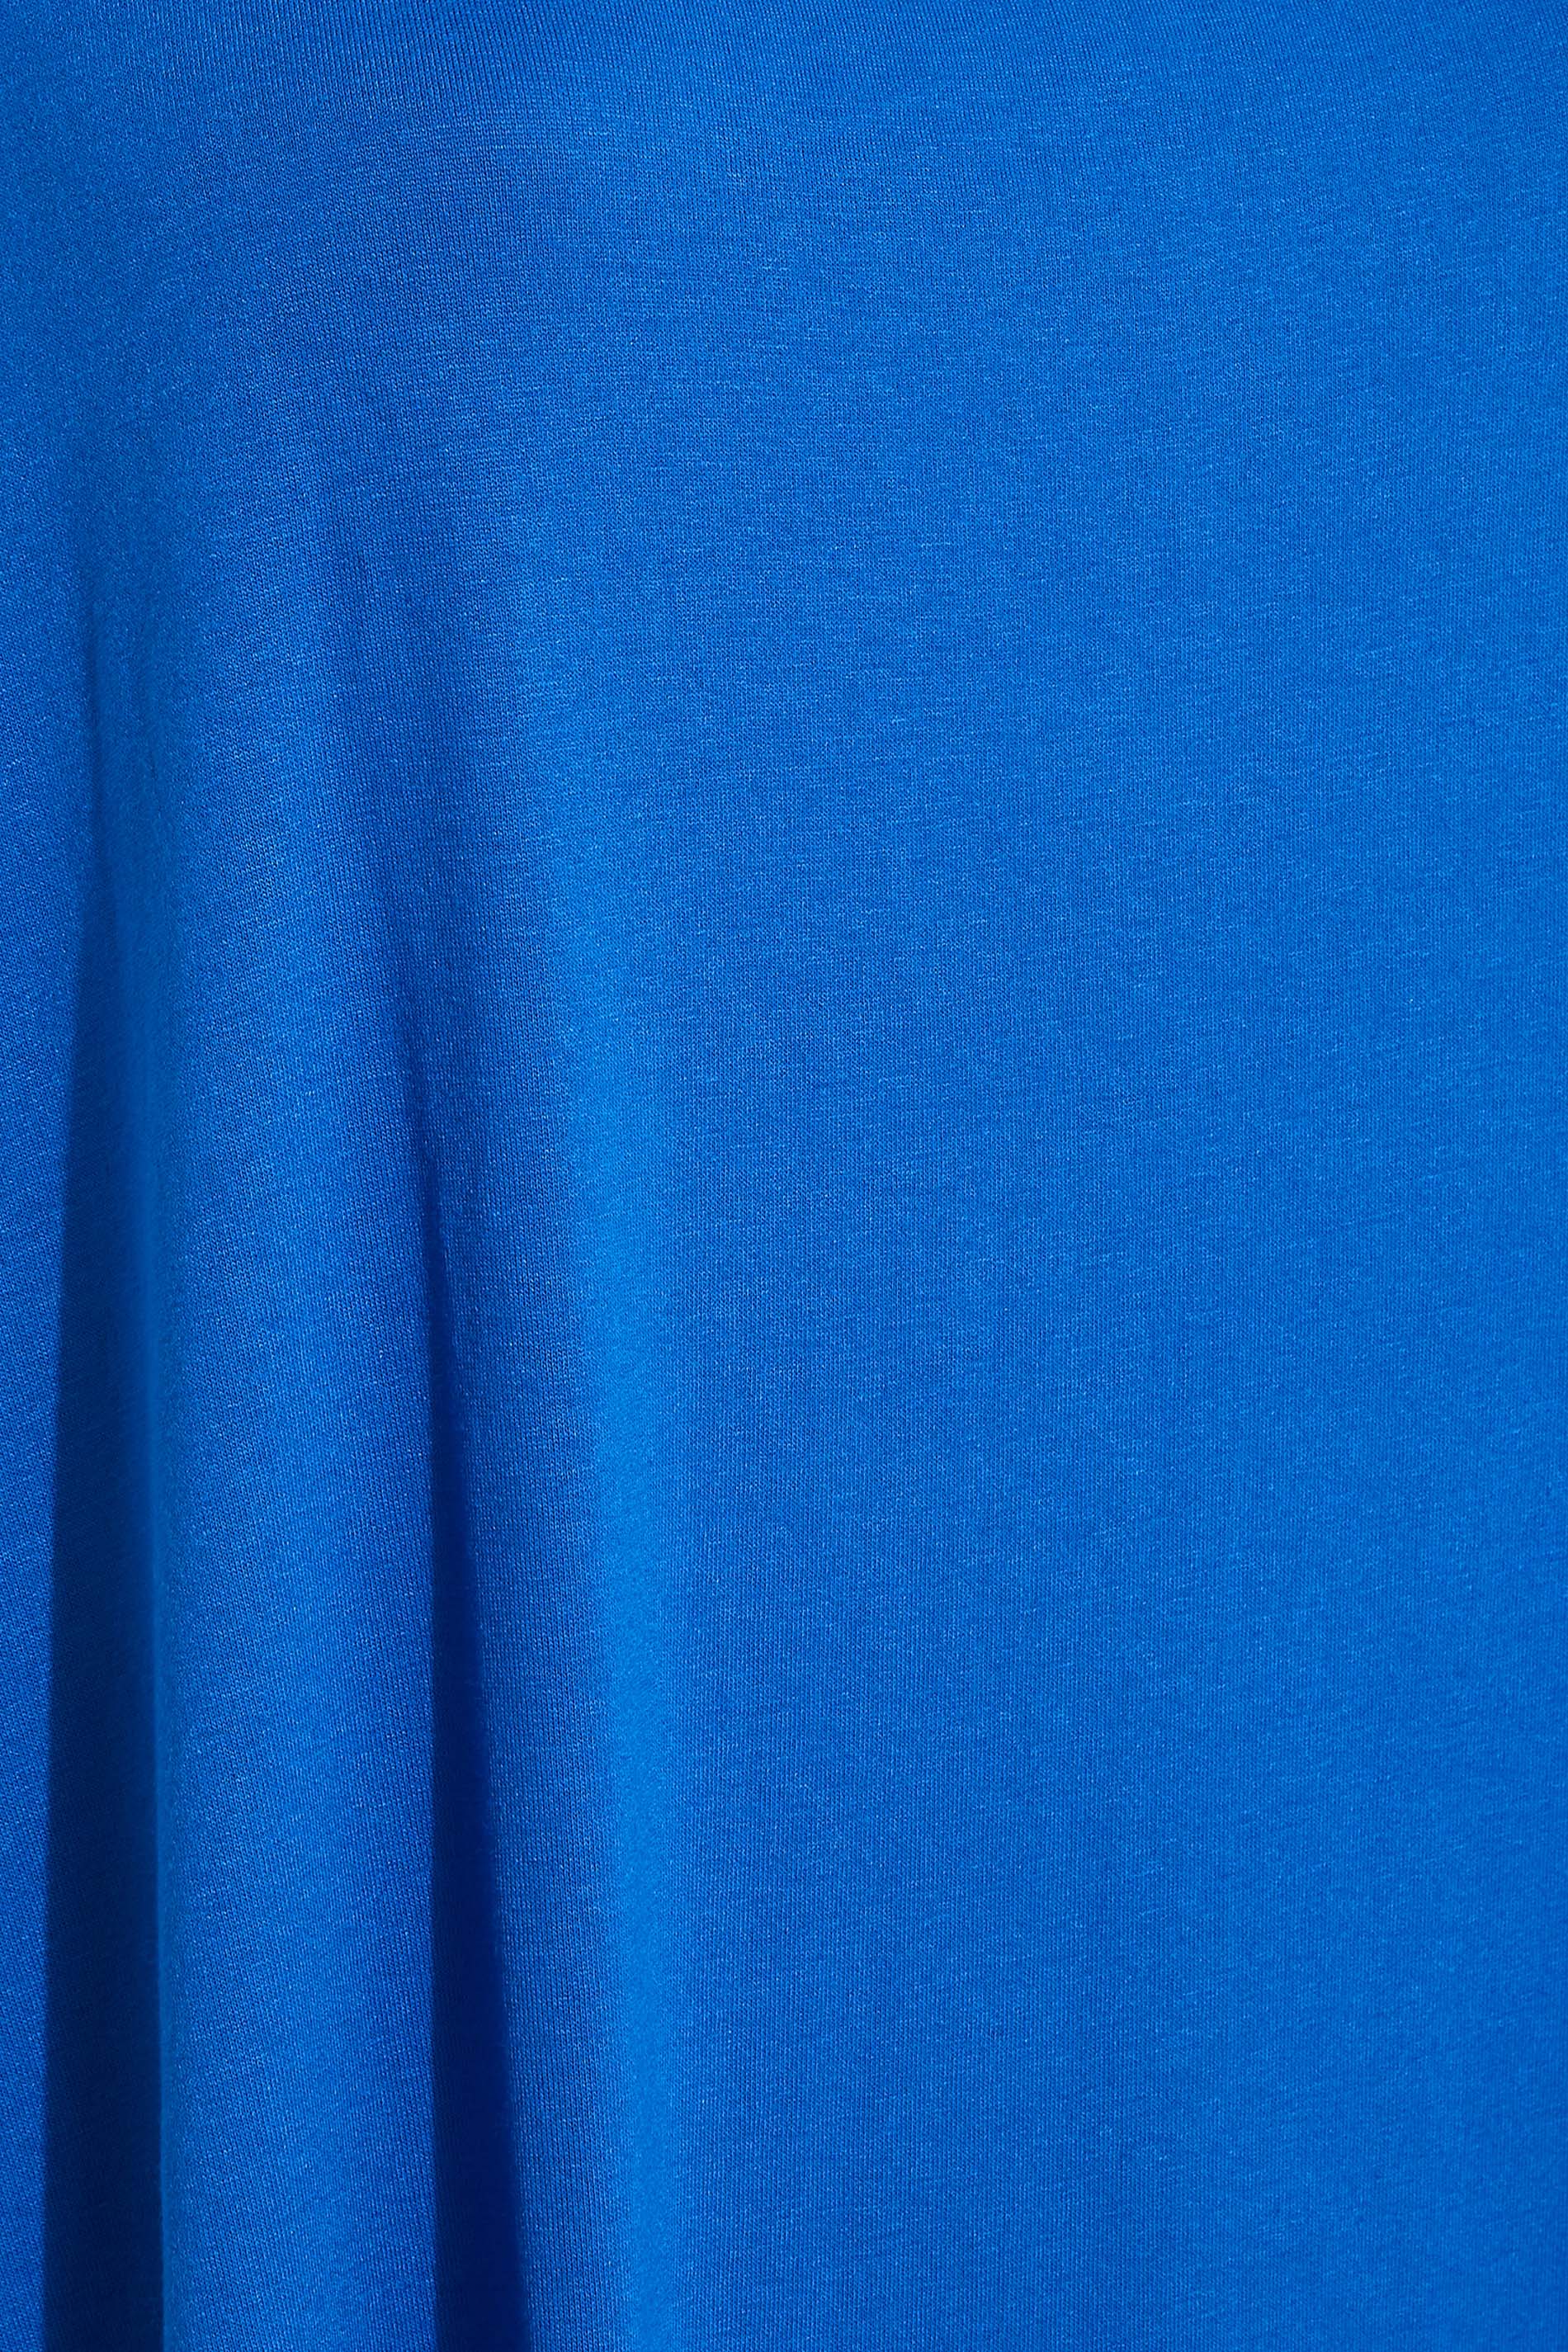 Grande taille  Tops Grande taille  Tops dÉté | Top Bleu Roi Découpé Design Uni en Jersey - KI55462